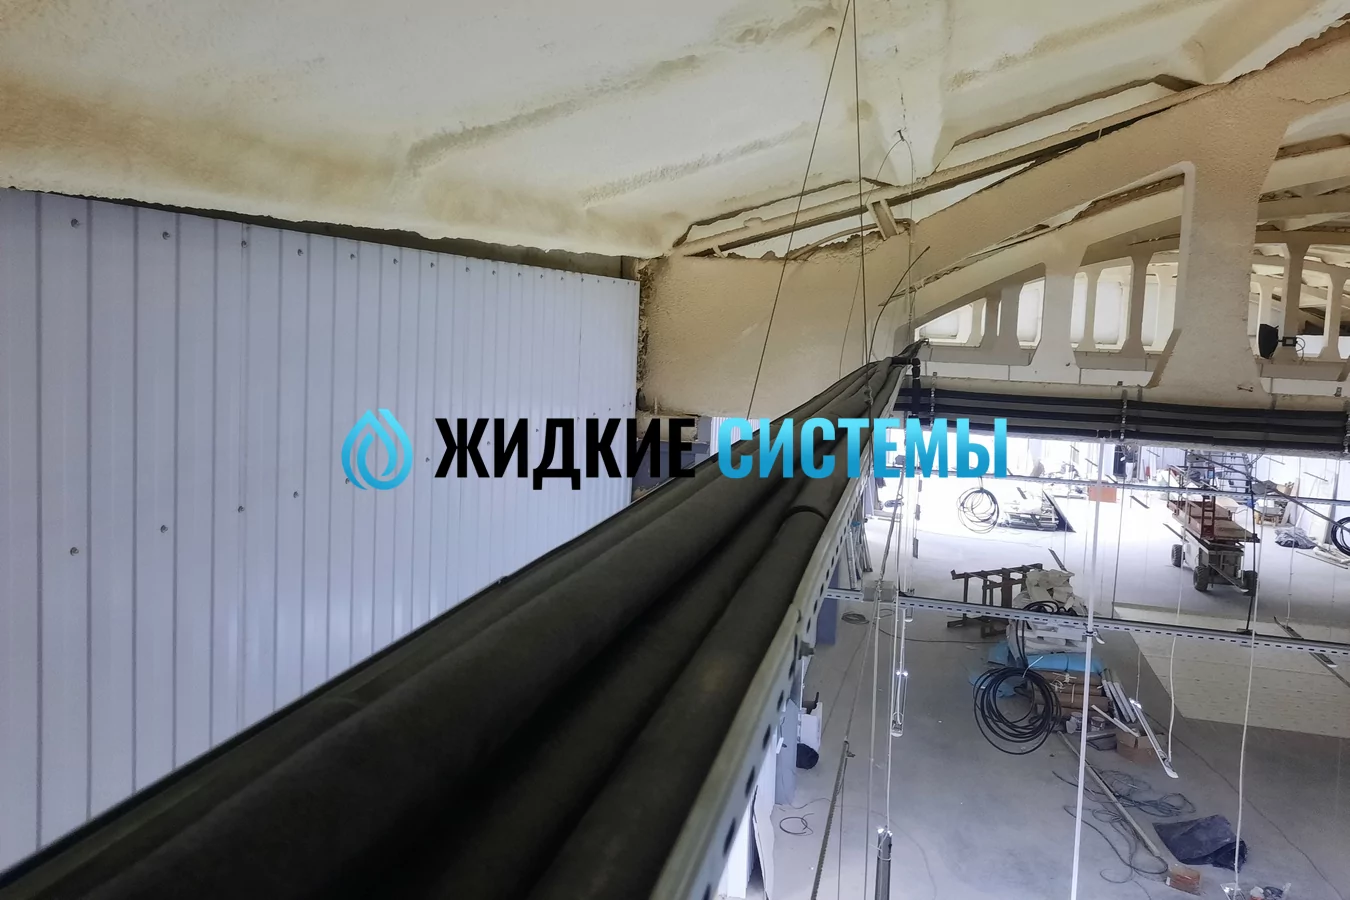 Монтирование трубопровода системы отопления под потолком производства